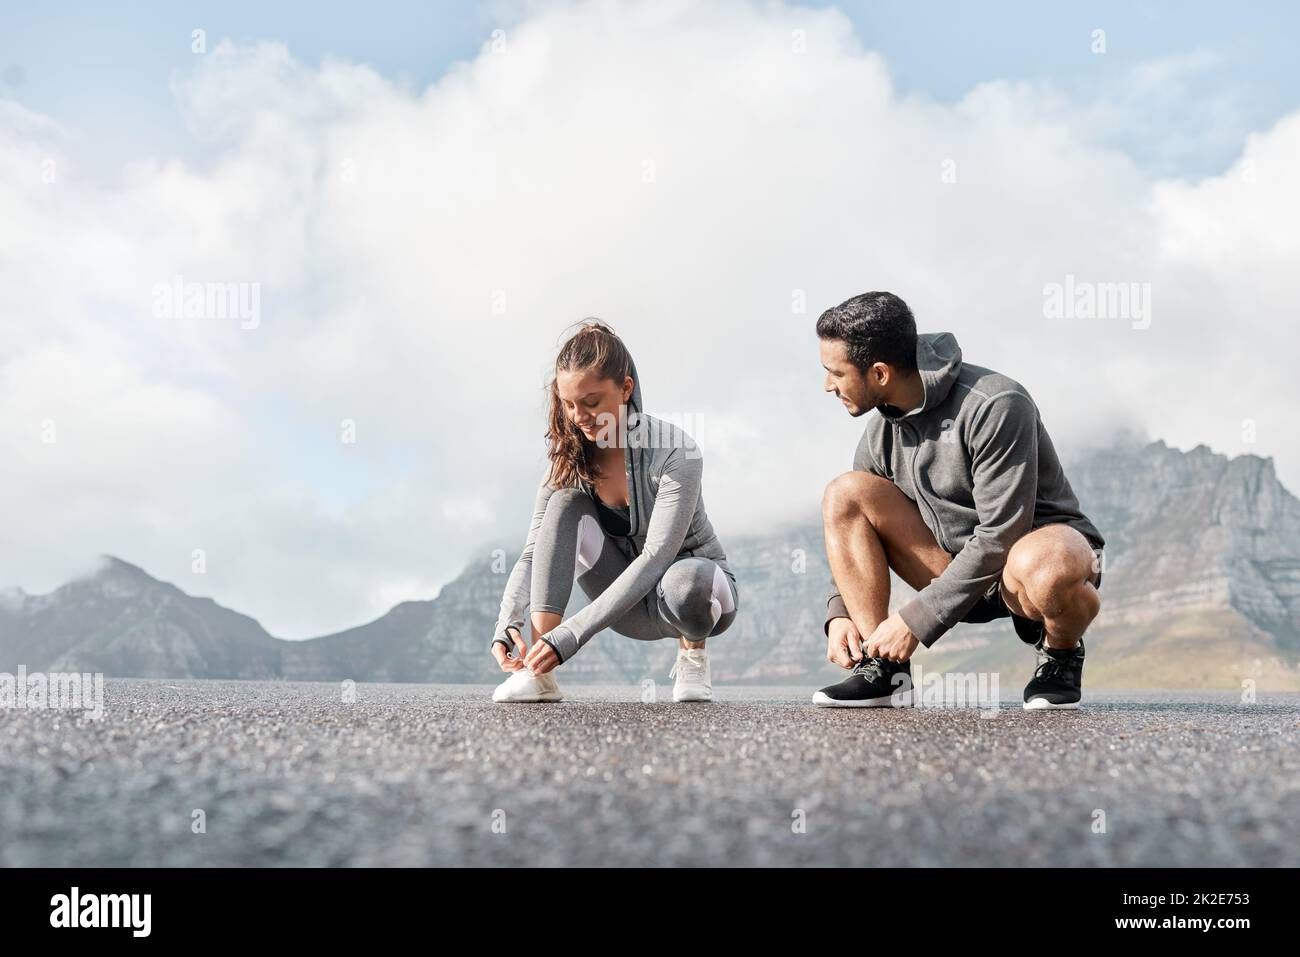 Unsere Laufschuhe haben Magie in sich. Aufnahme eines sportlichen jungen Mannes und einer jungen Frau, die beim Training im Freien ihre Schnürsenkel binden. Stockfoto